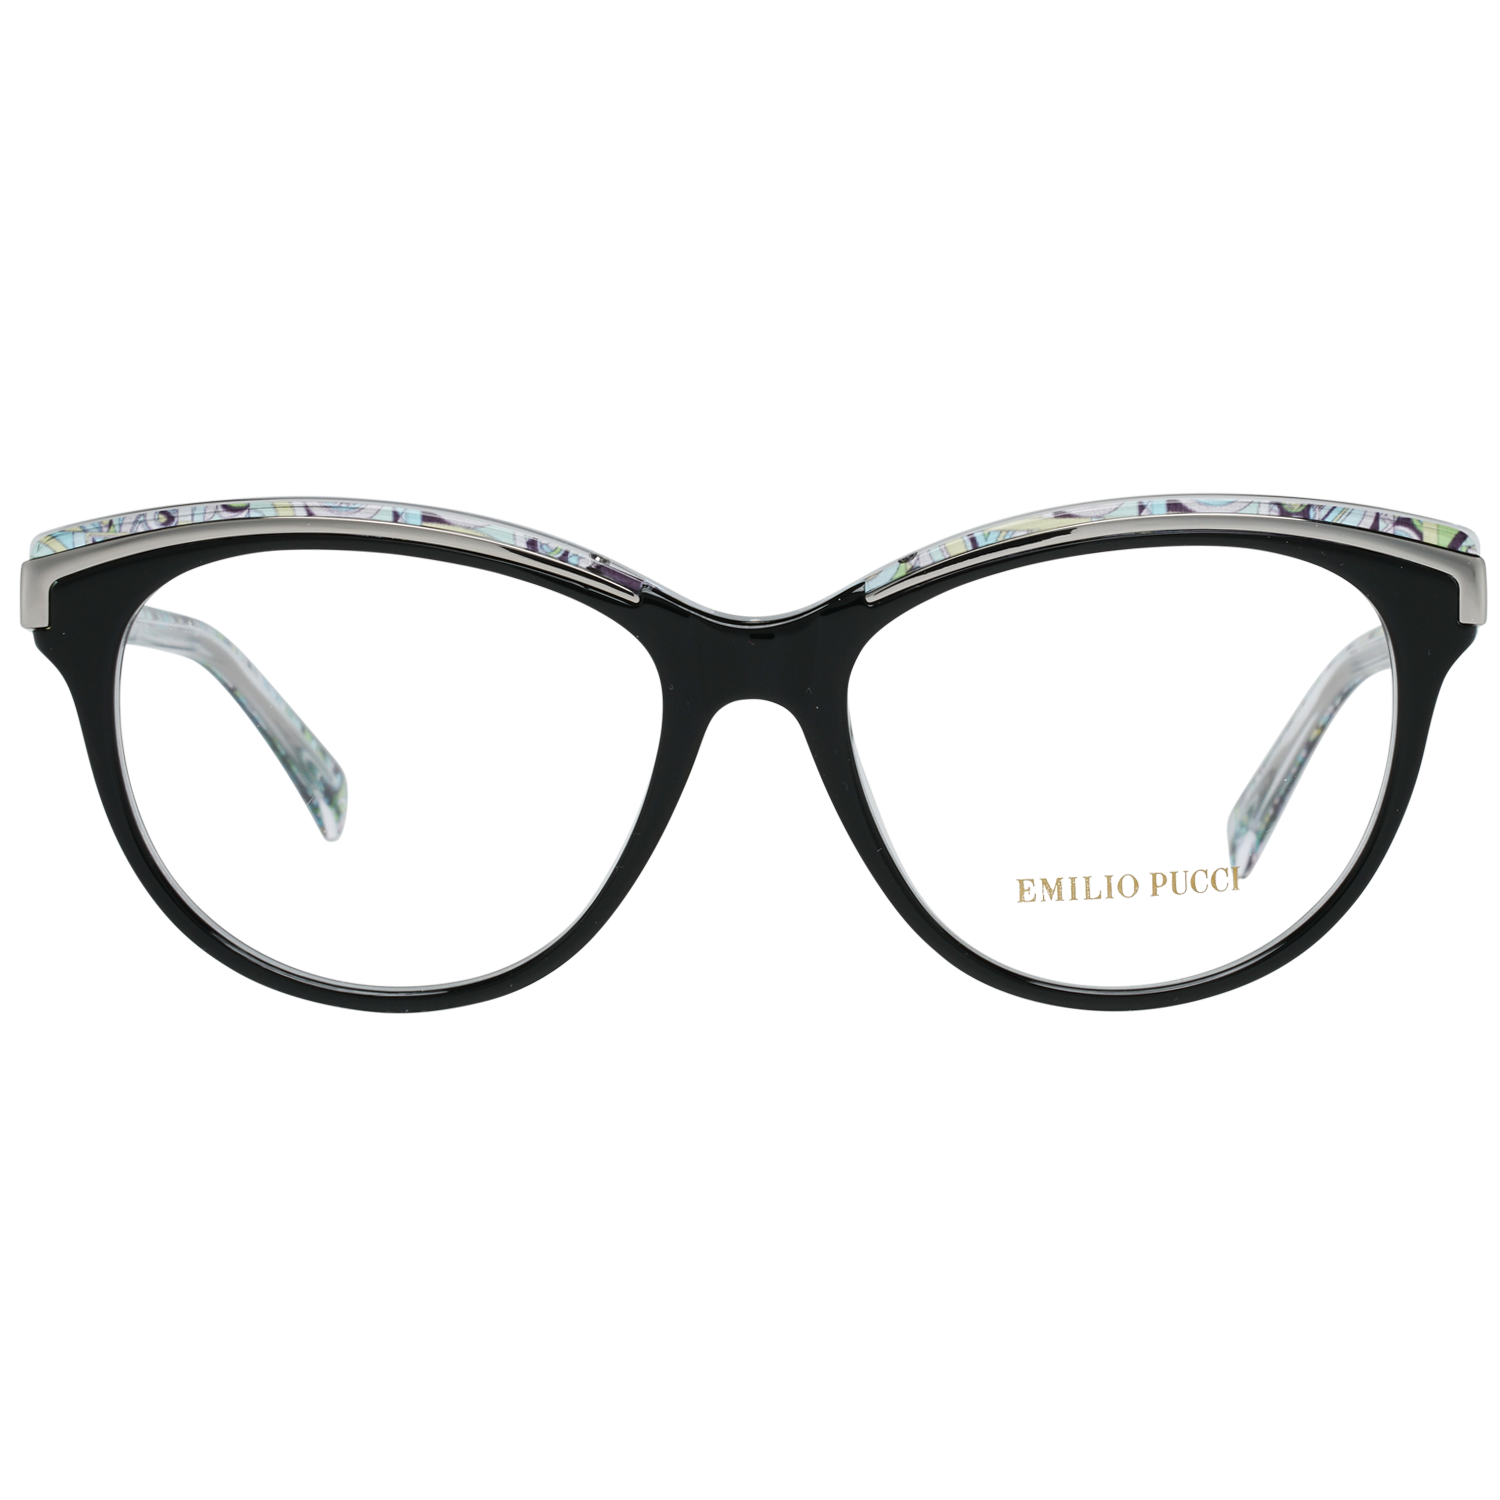 Emilio Pucci Frames Emilio Pucci Optical Frame EP5038 001 53 Eyeglasses Eyewear UK USA Australia 